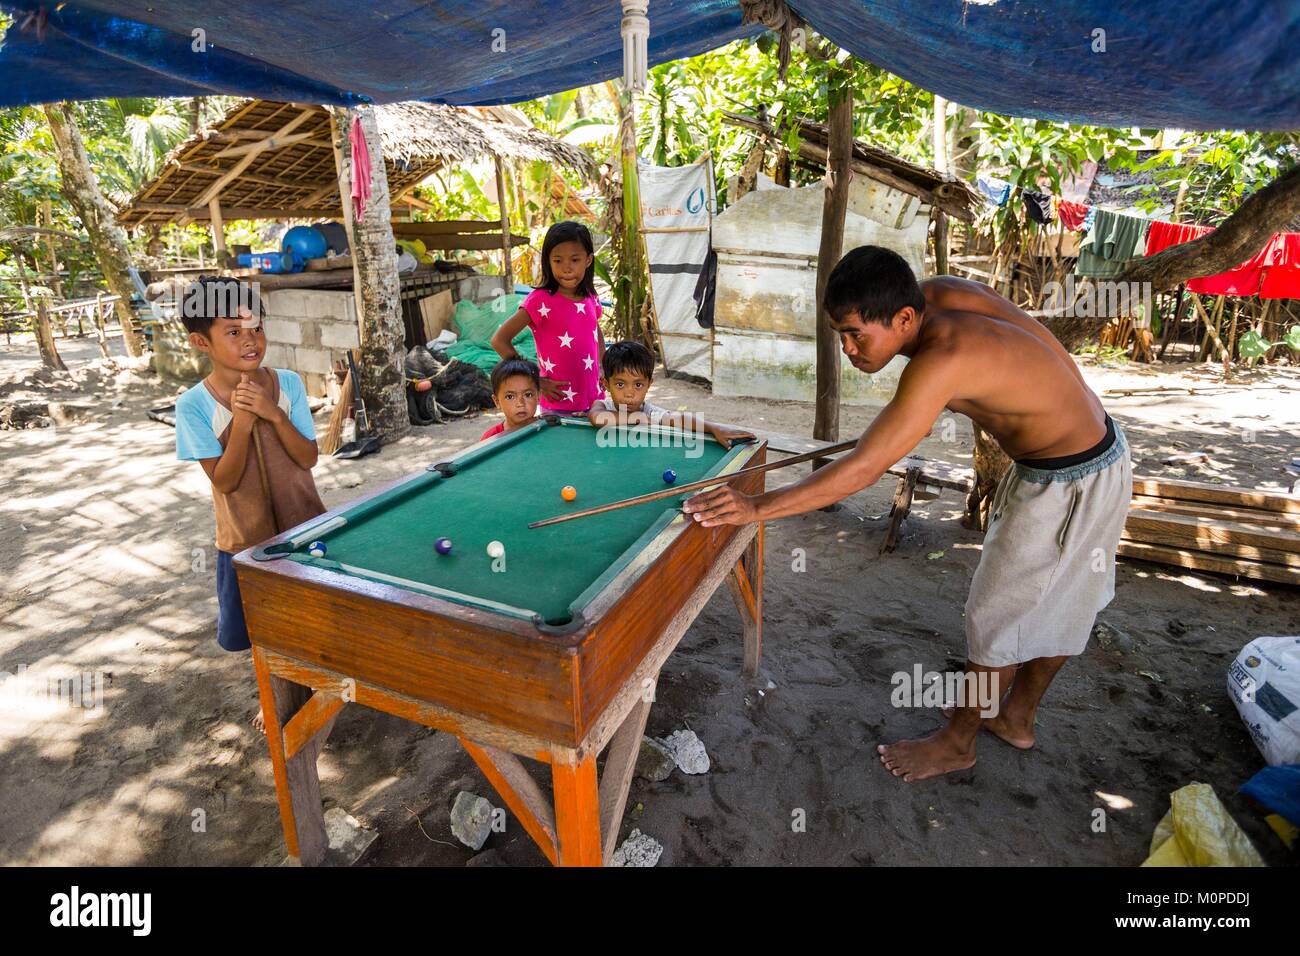 Philippines,Luzon, Camarines Sur Province,famille,San Jose jouer billard dans l'arrière-cour d'une maison dans un village de pêcheurs Banque D'Images